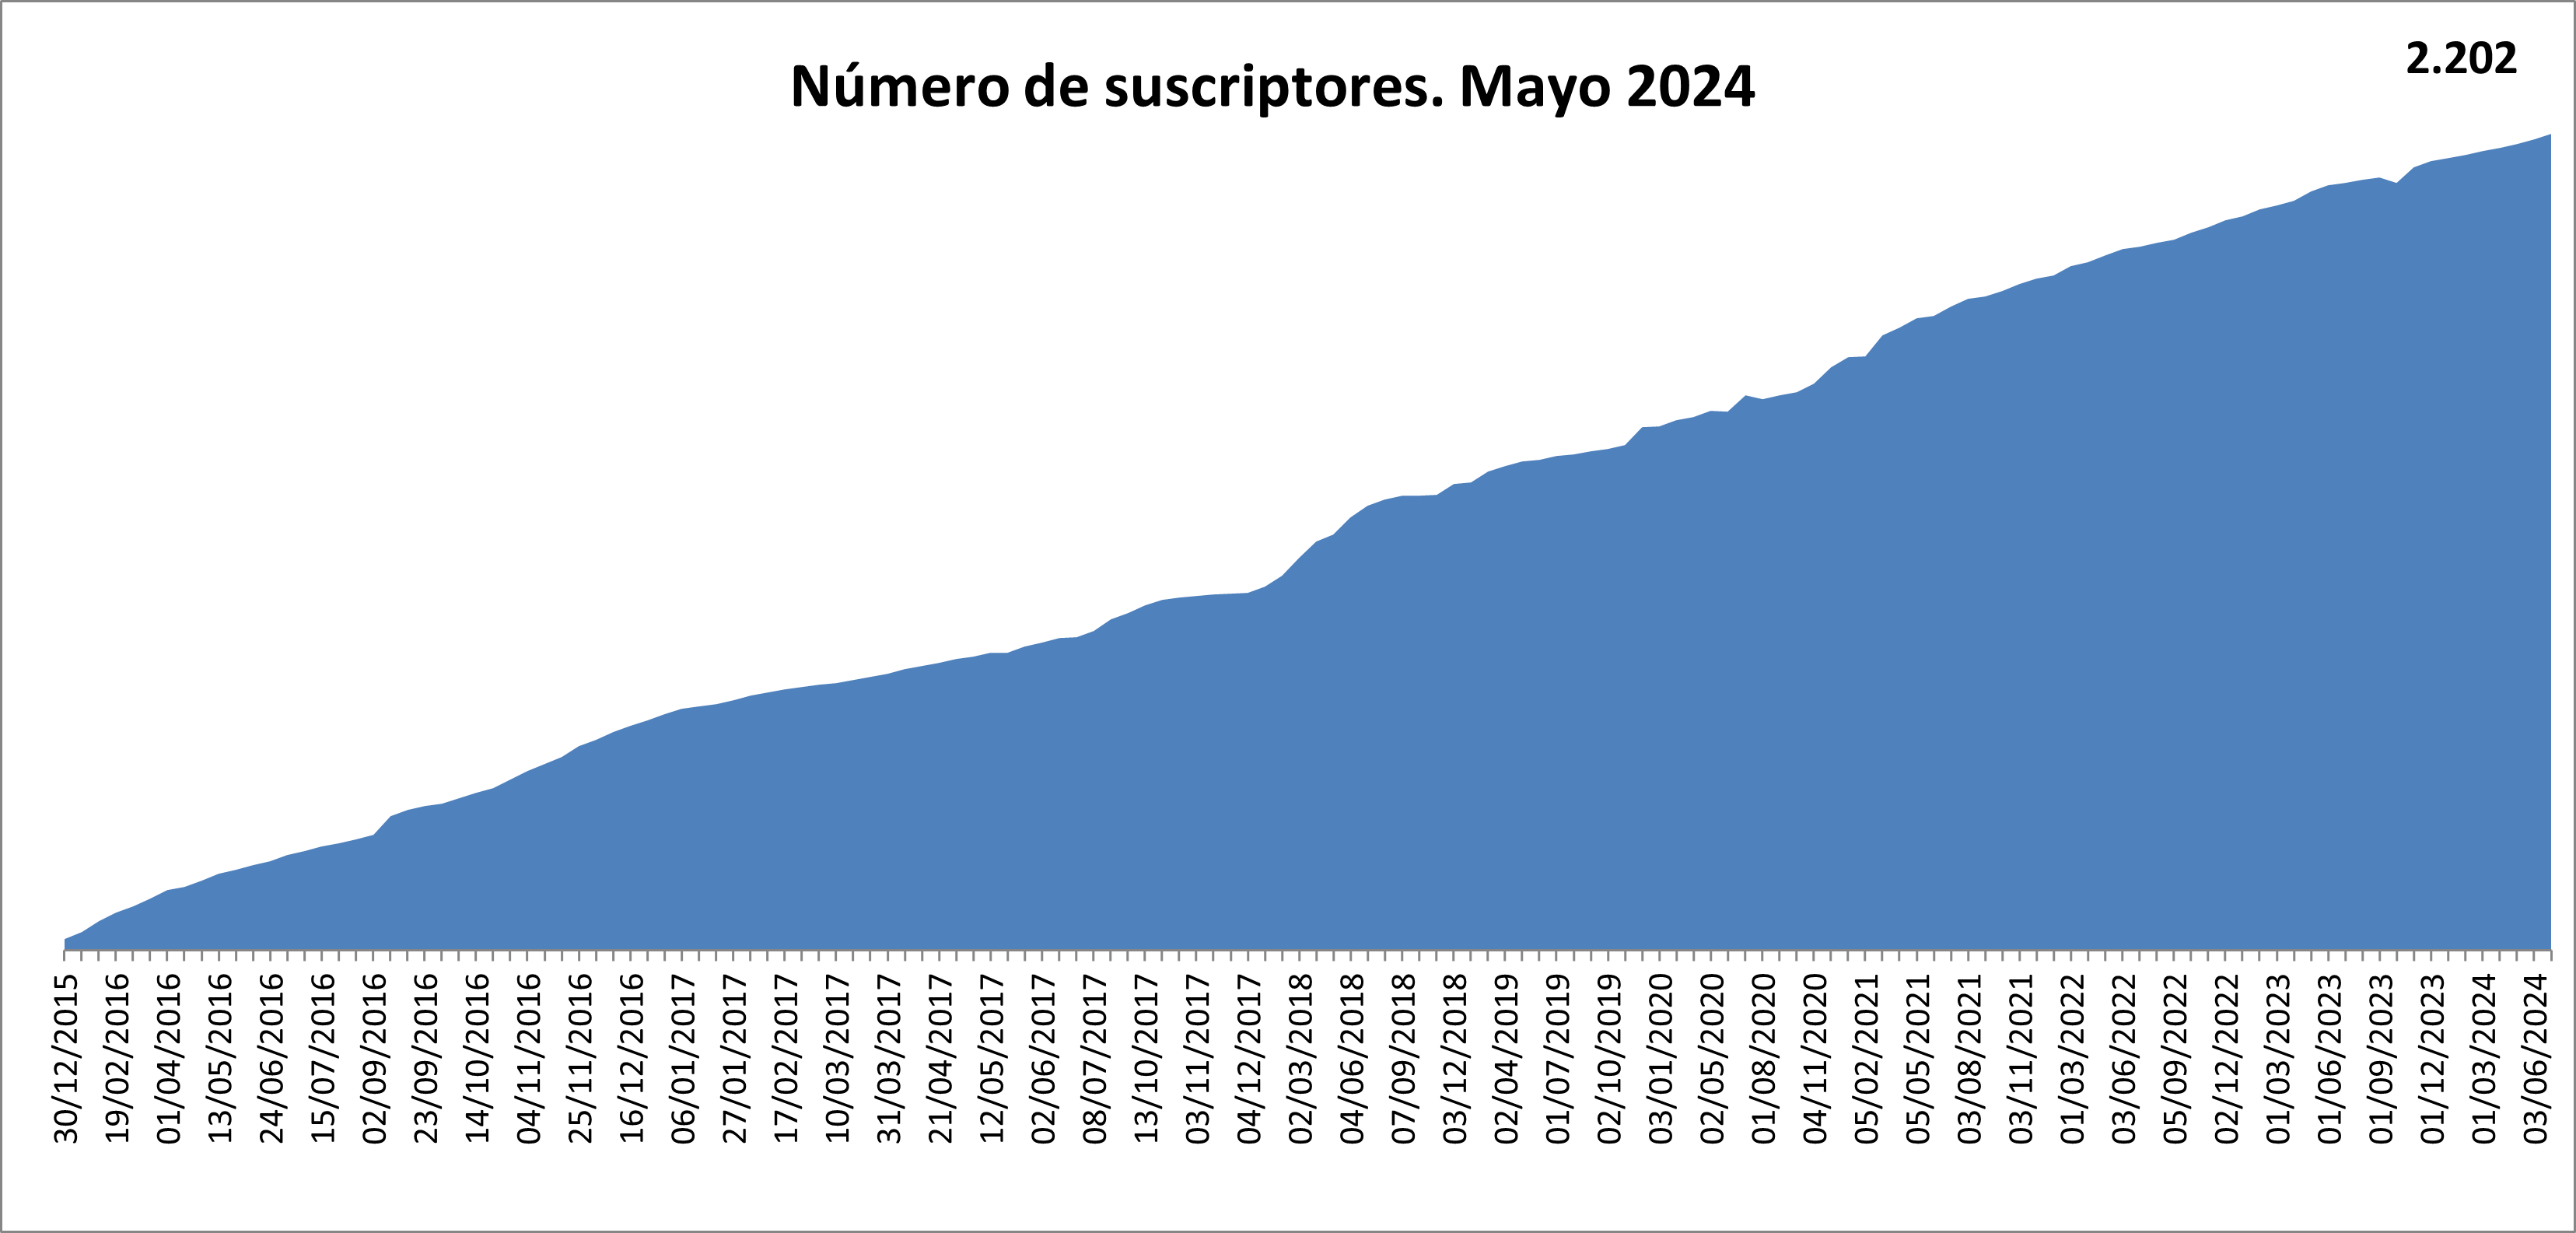 Número de suscriptores 2008. Enero 2023